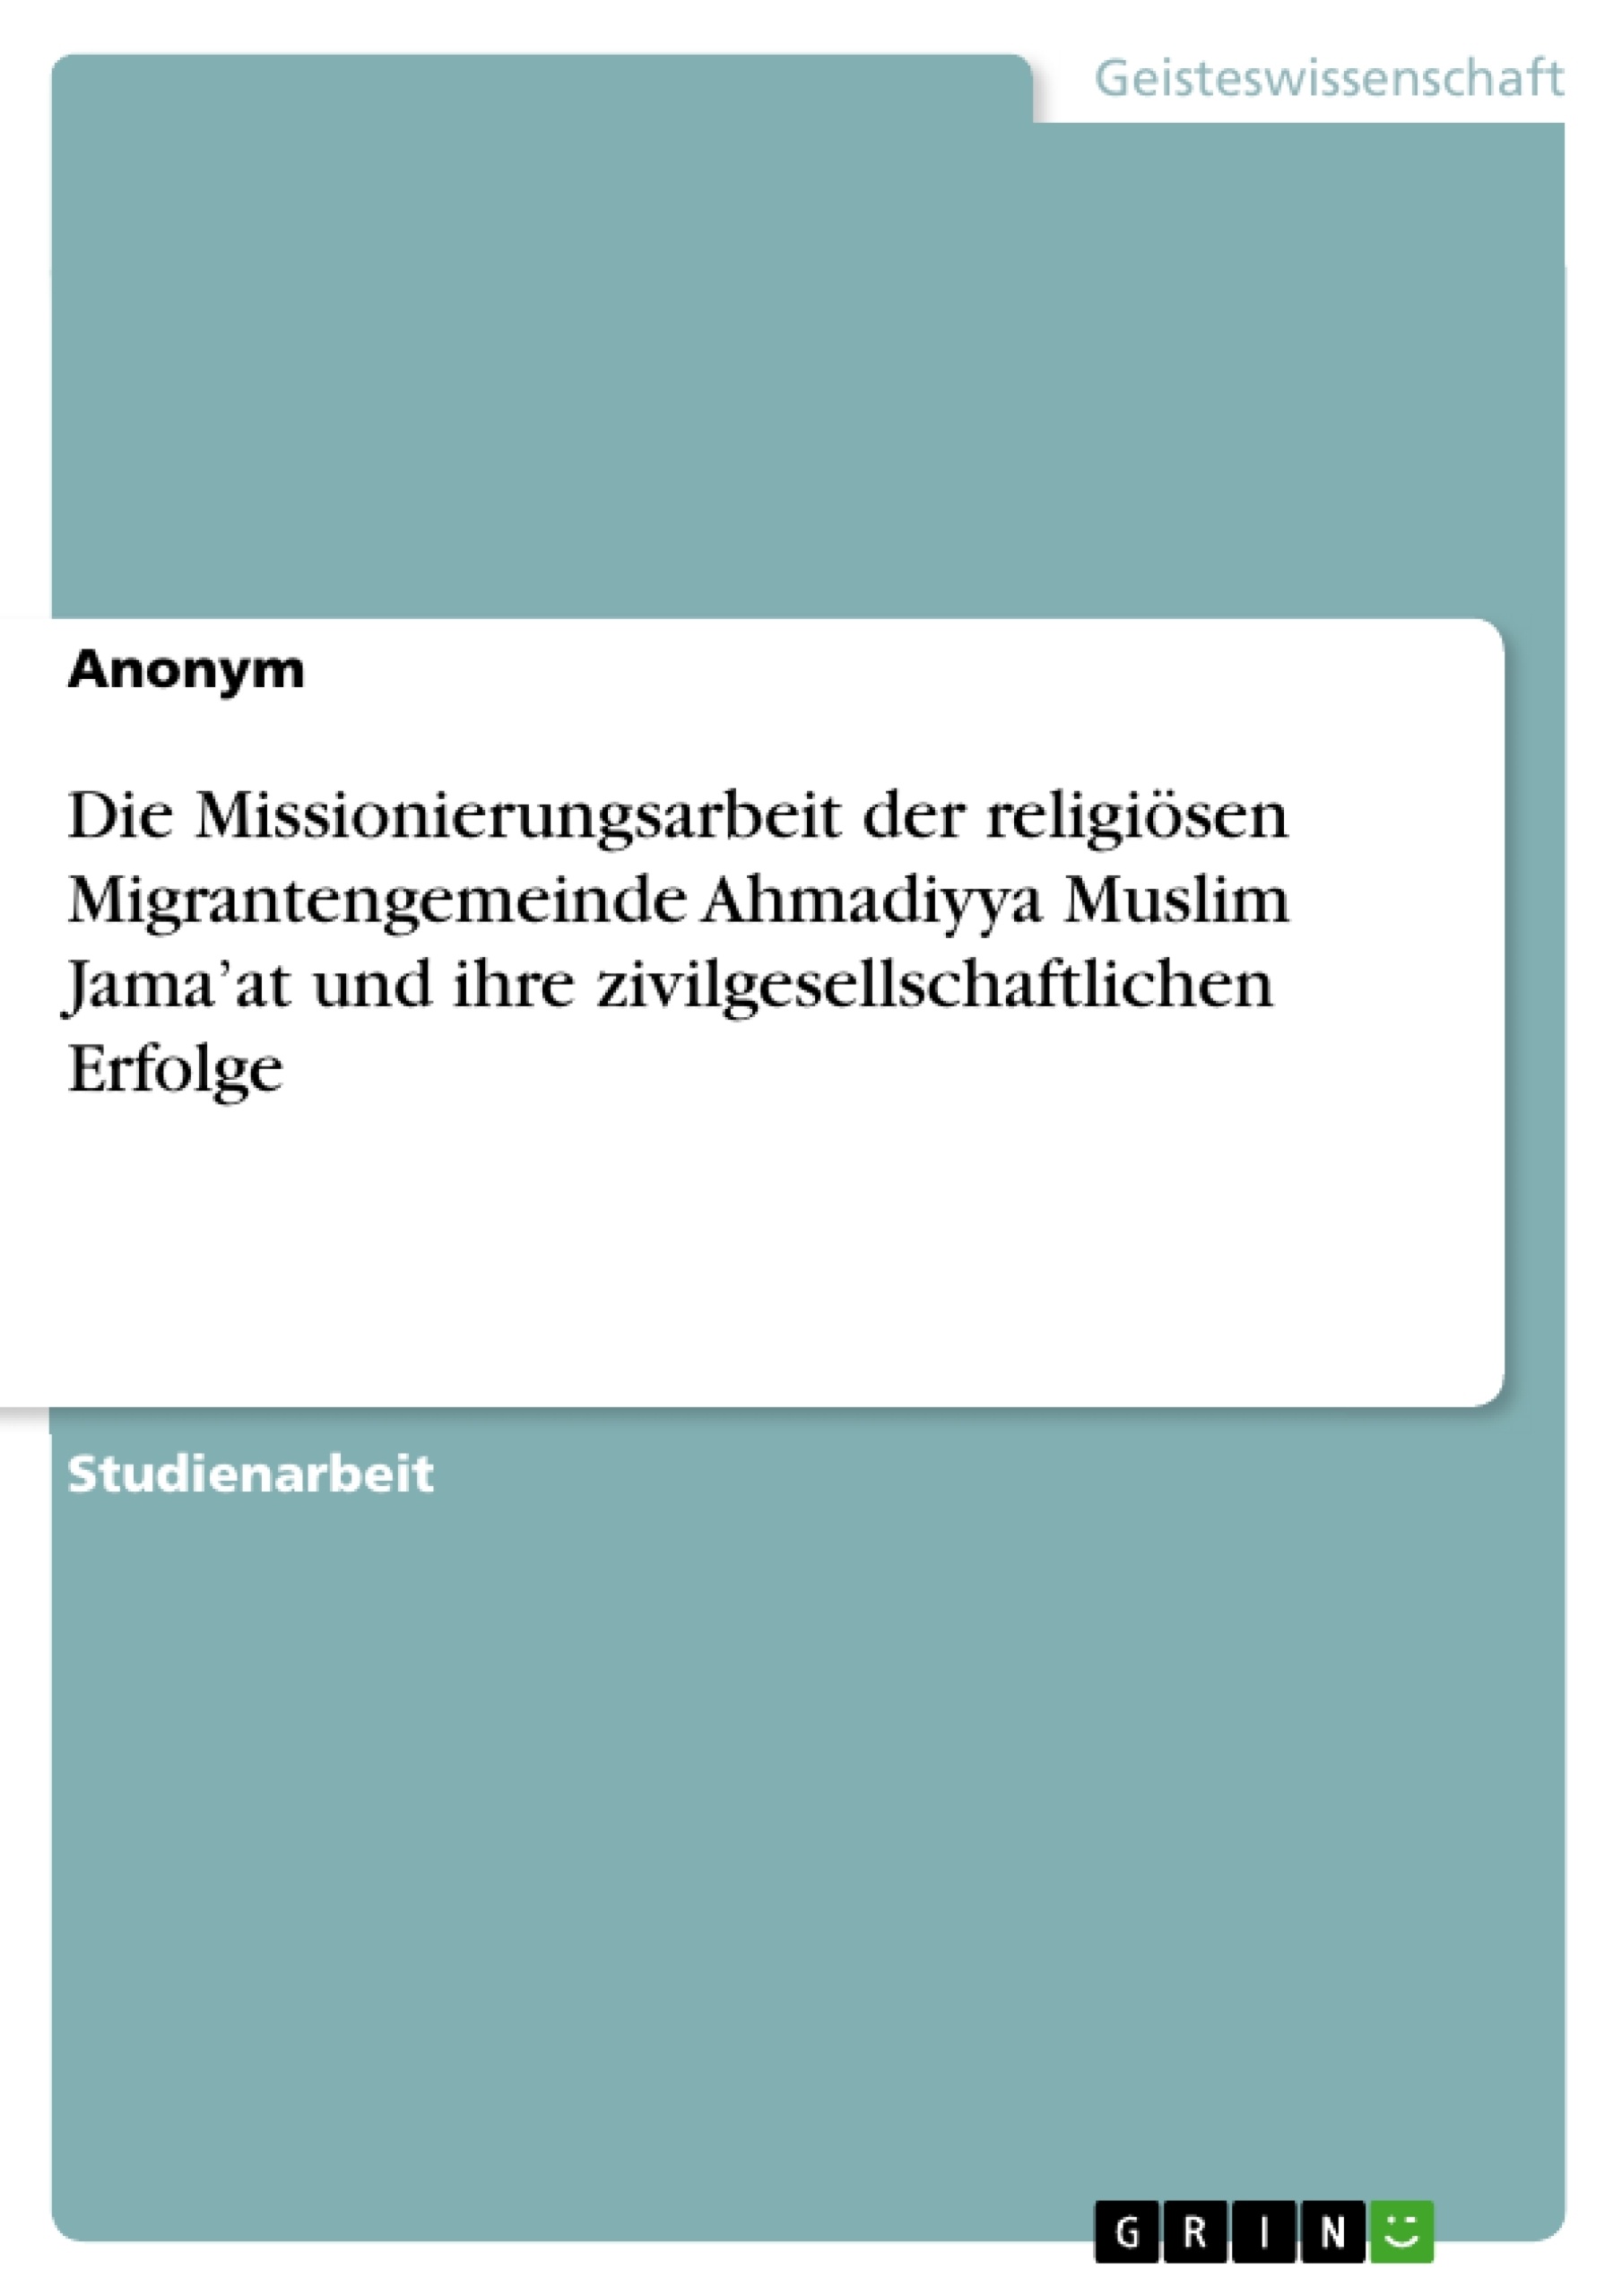 Title: Die Missionierungsarbeit der religiösen Migrantengemeinde Ahmadiyya Muslim Jama’at und ihre zivilgesellschaftlichen Erfolge